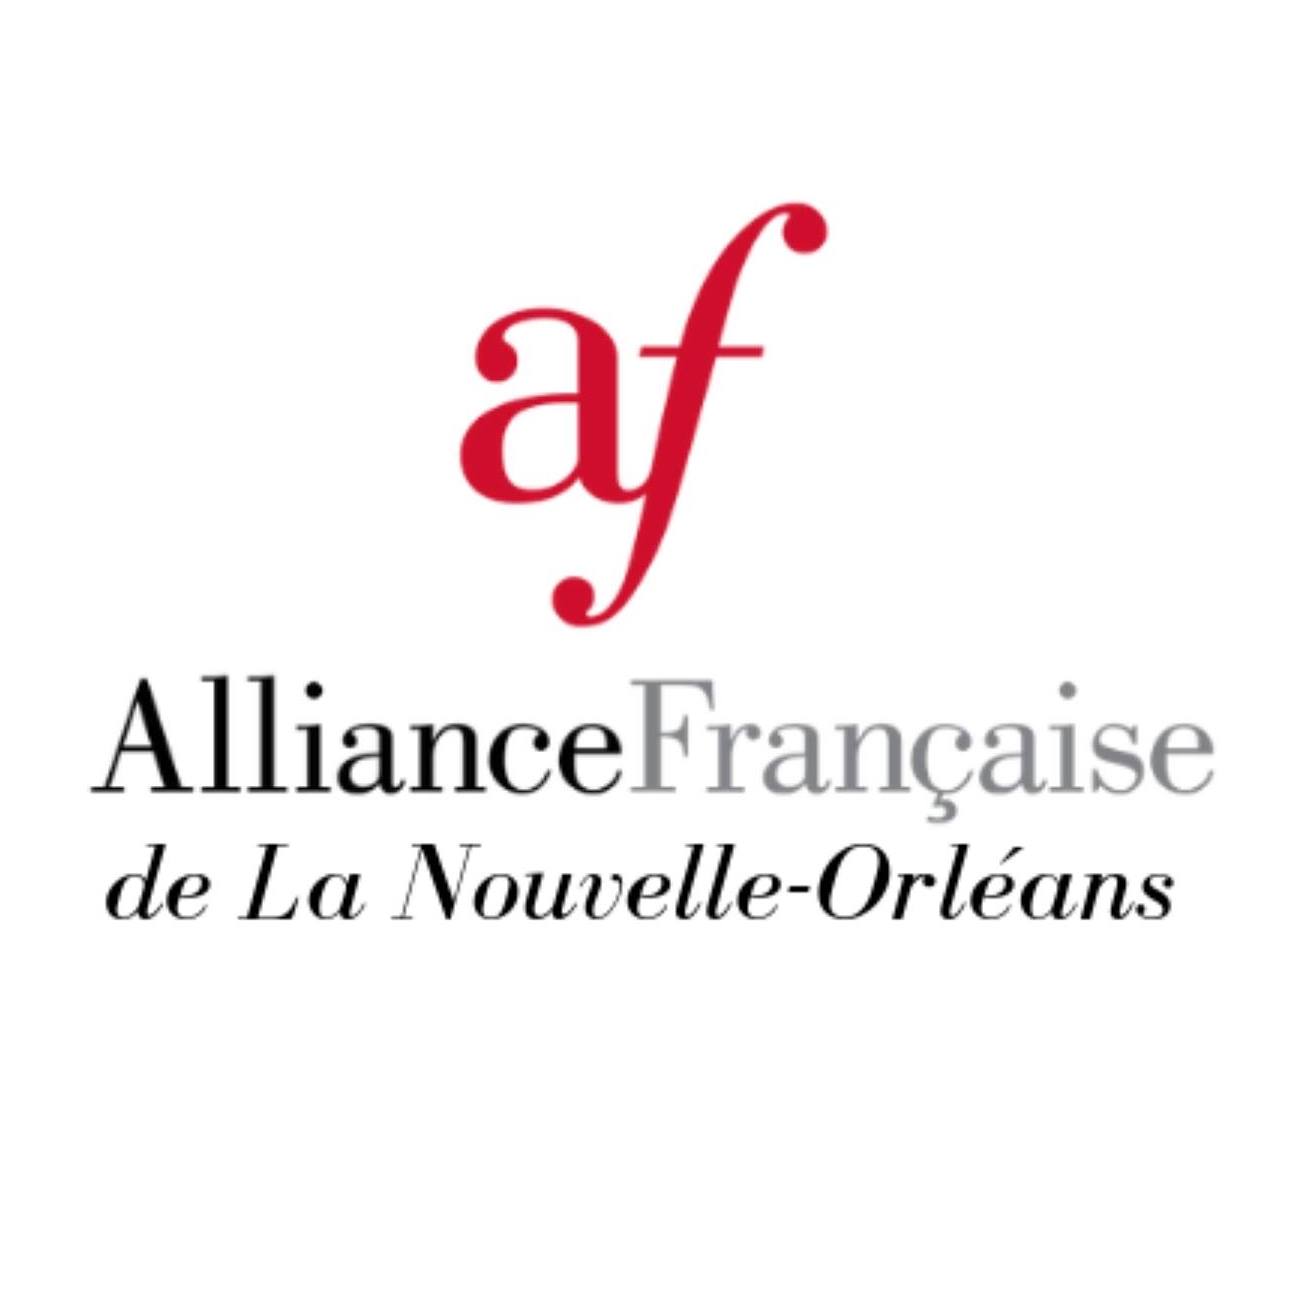 French Cultural Organization in Louisiana - Alliance Francaise de la Nouvelle Orléans